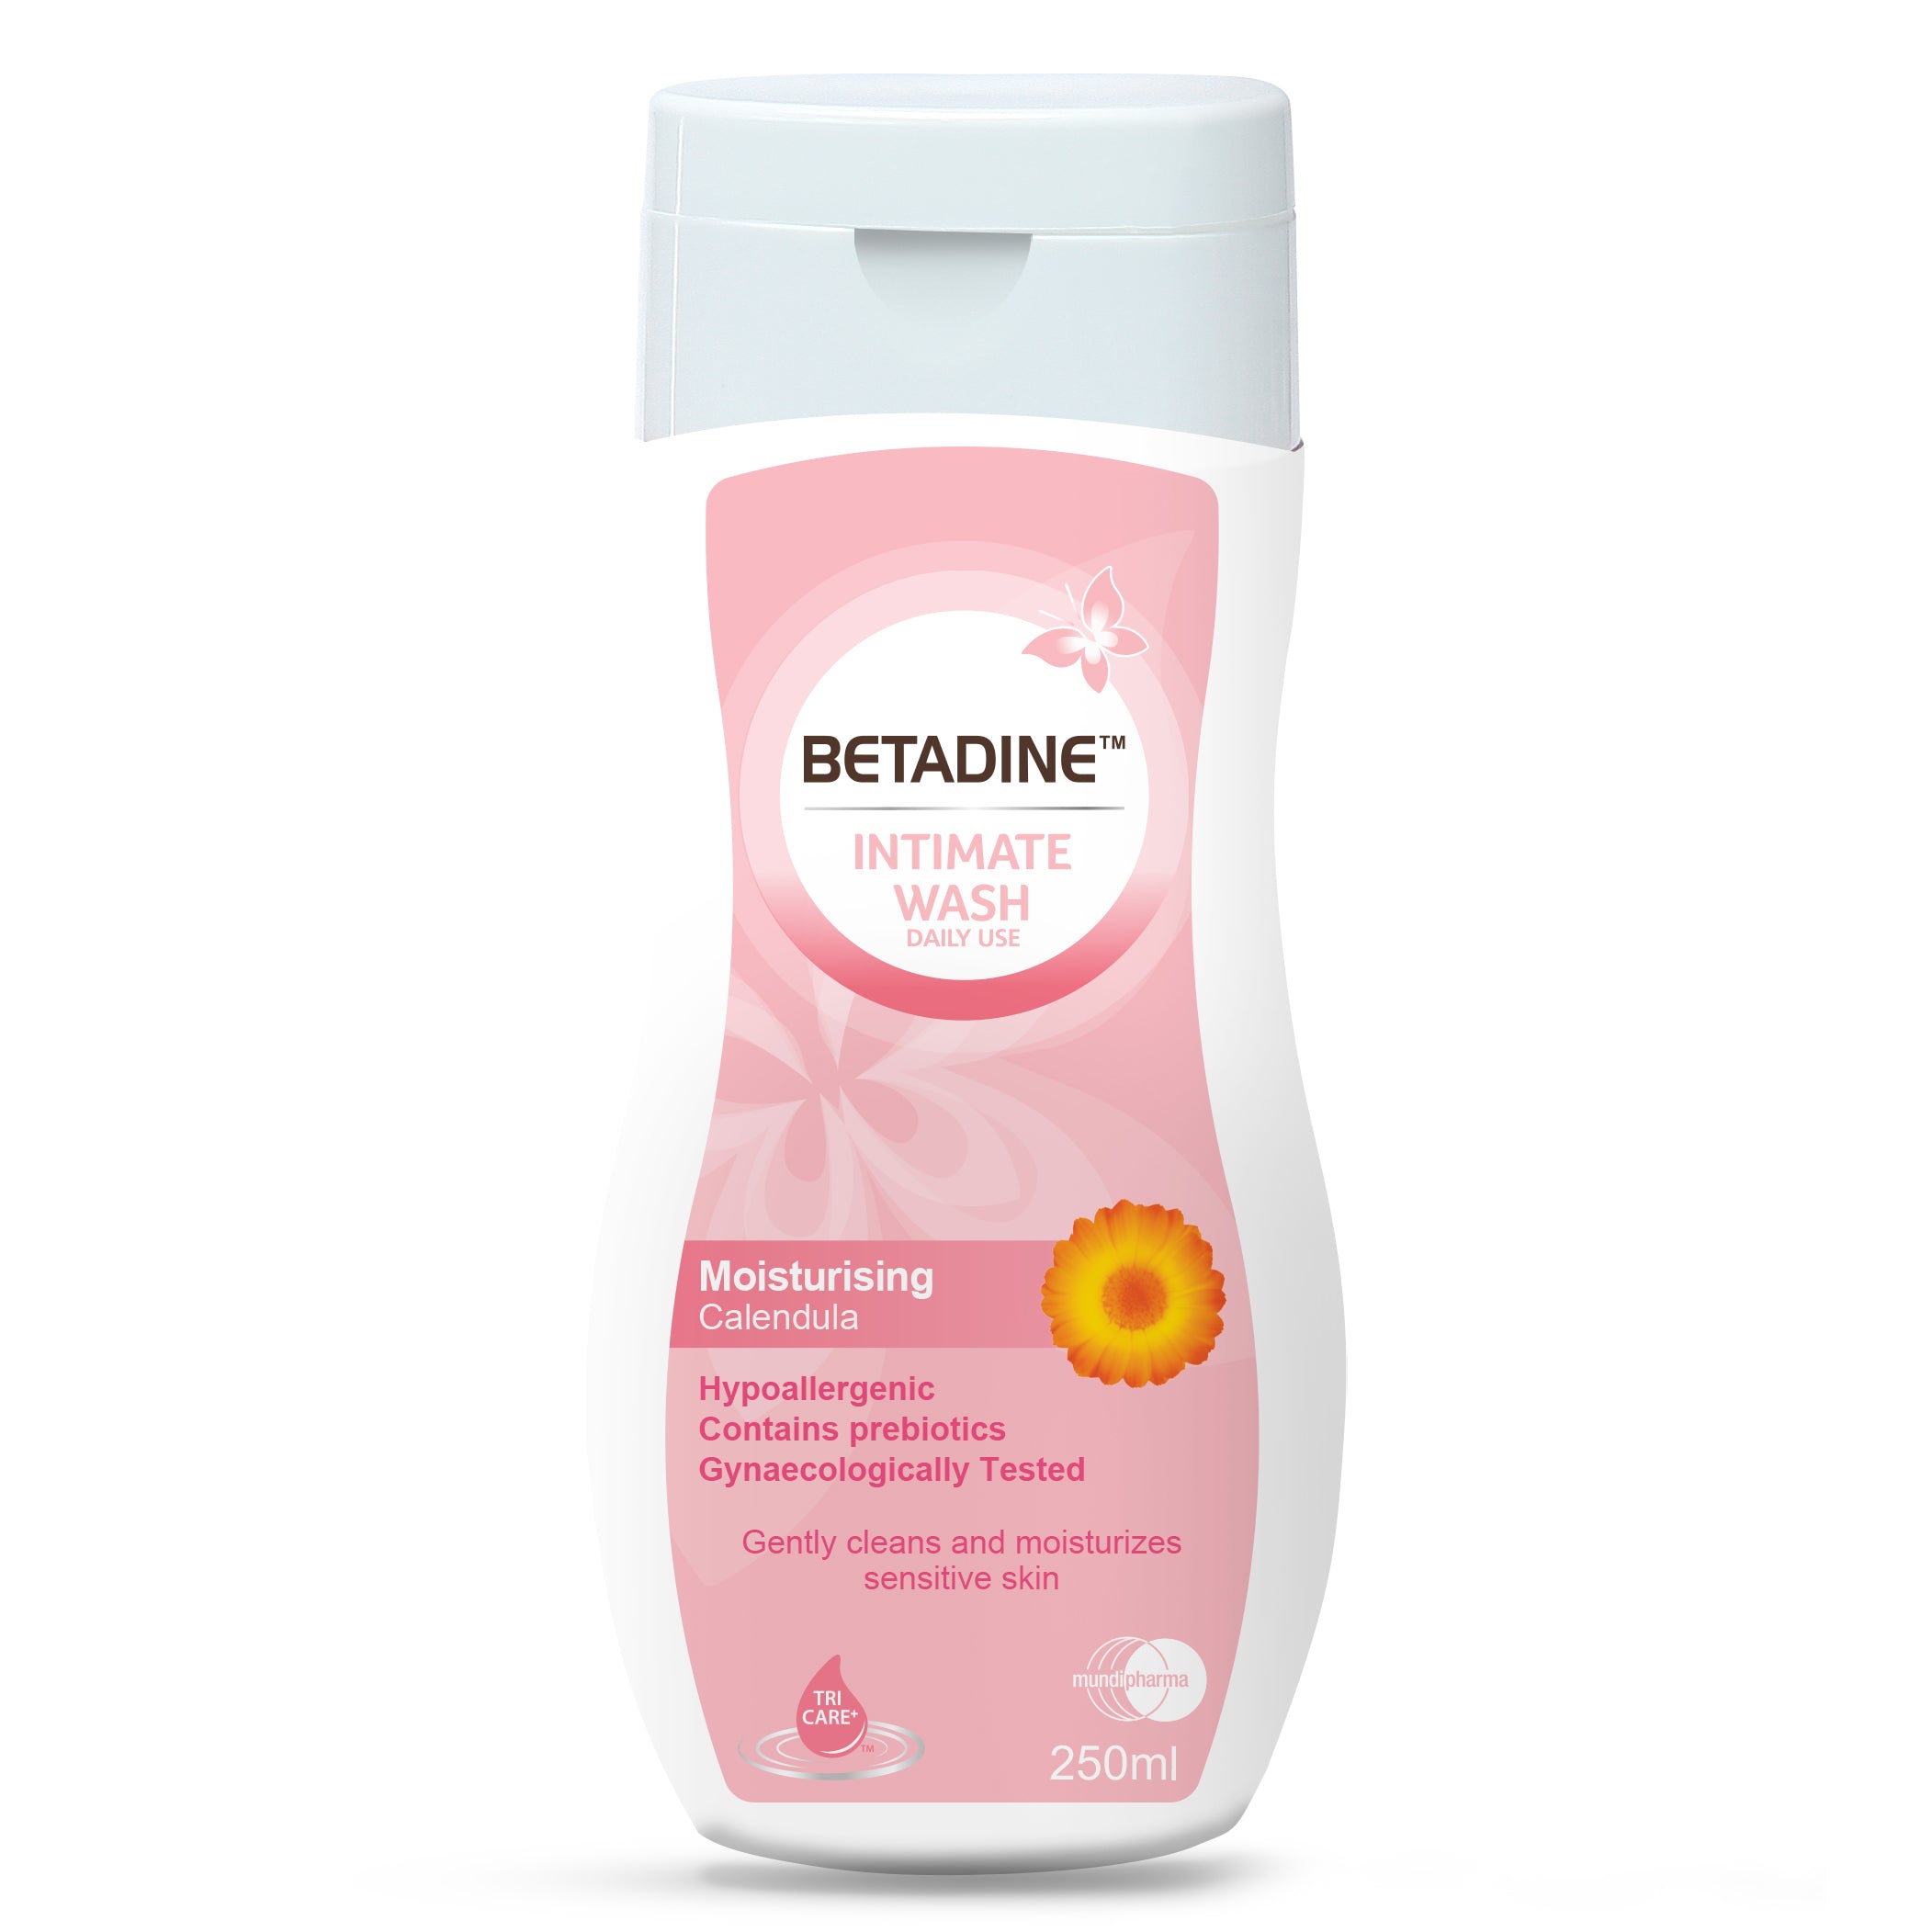 Betadine Intimate Wash Moisturizing Calendula 250ml